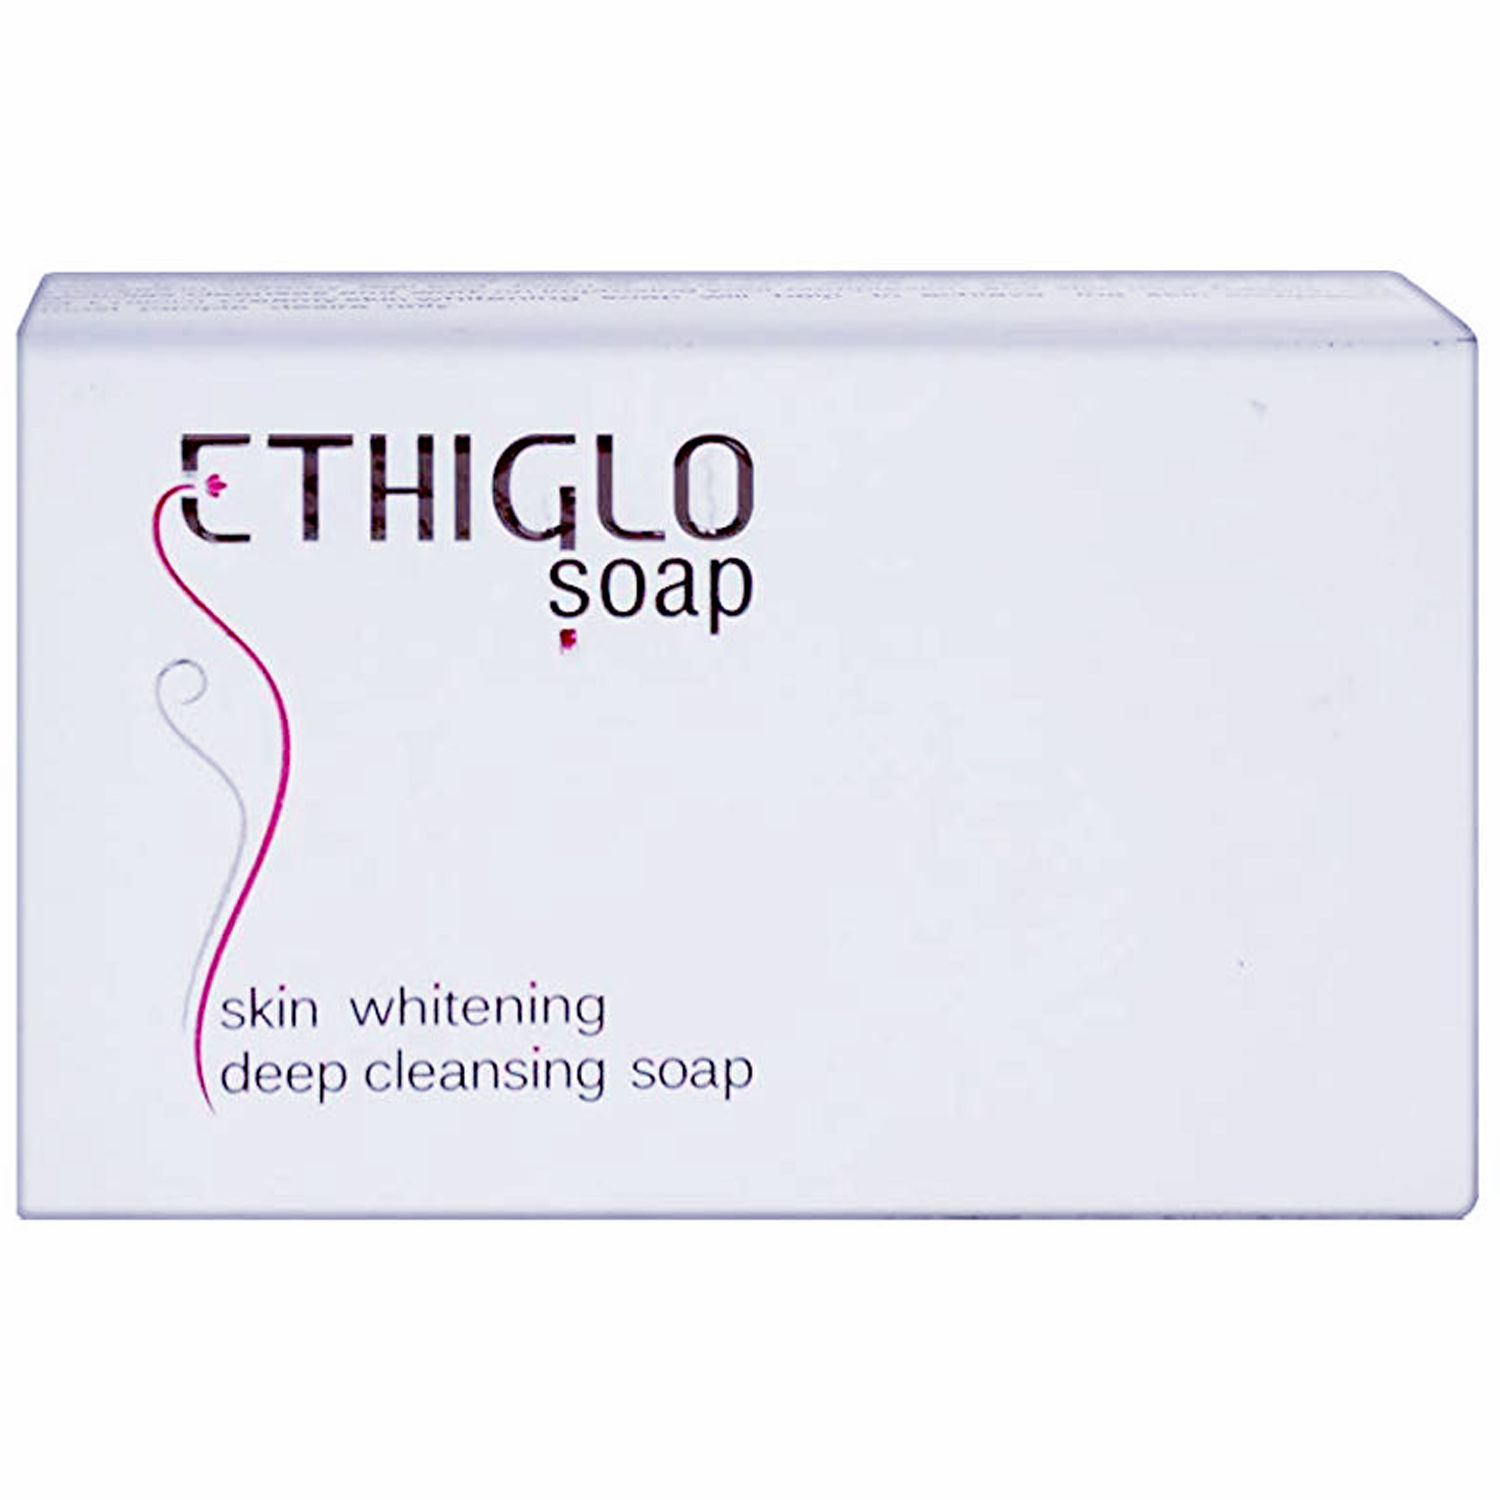 Buy Ethiglo Soap, 75 gm Online